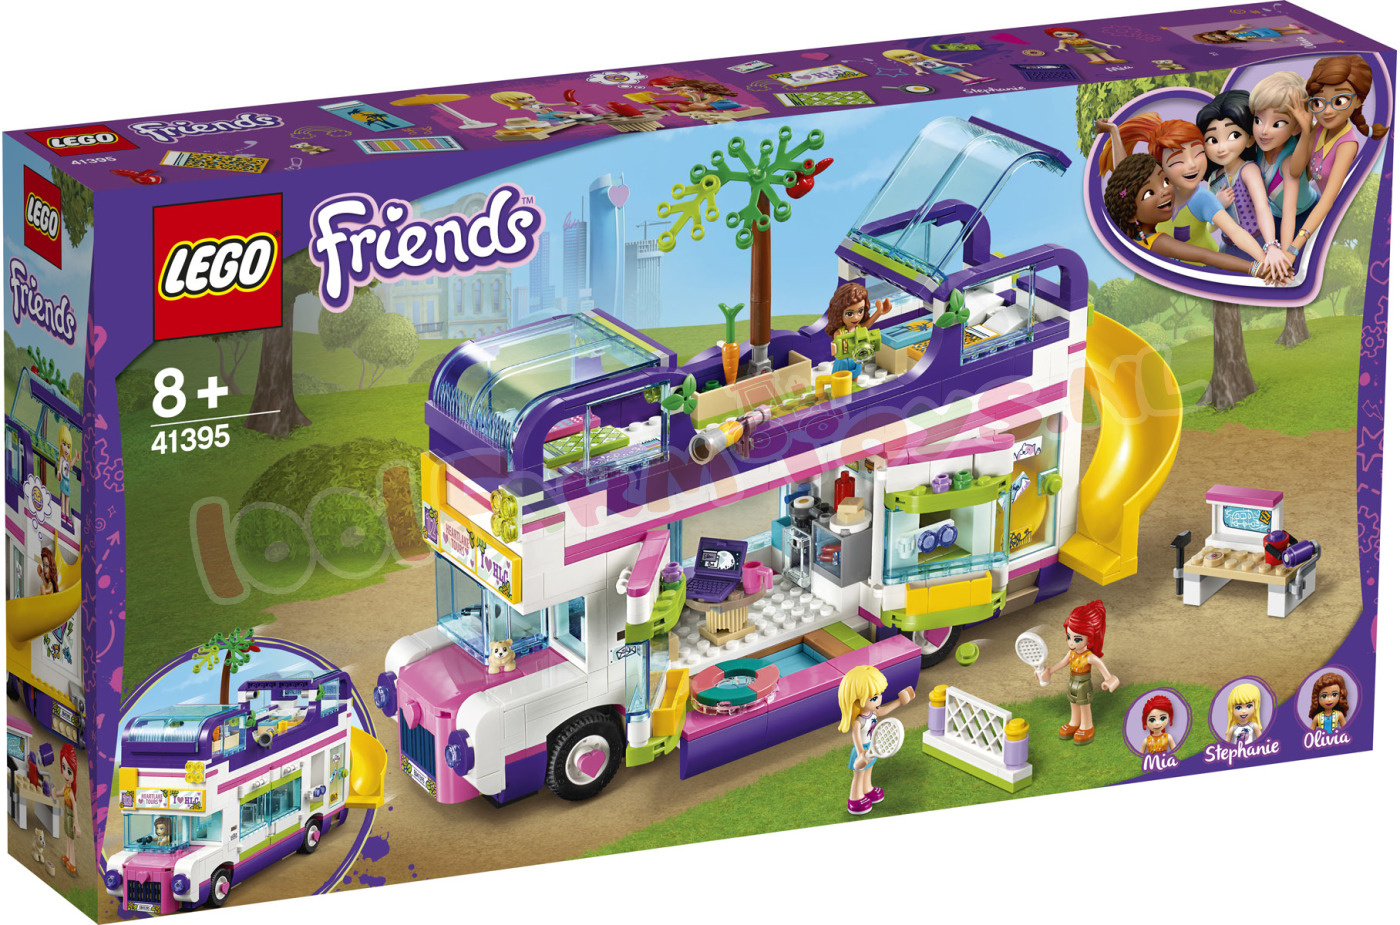 LEGO Friends VriendSchapsBus - 41395 - Uitverkocht Farm - 1001Farmtoys - LET OP dit product wordt geproduceerd door LEGO